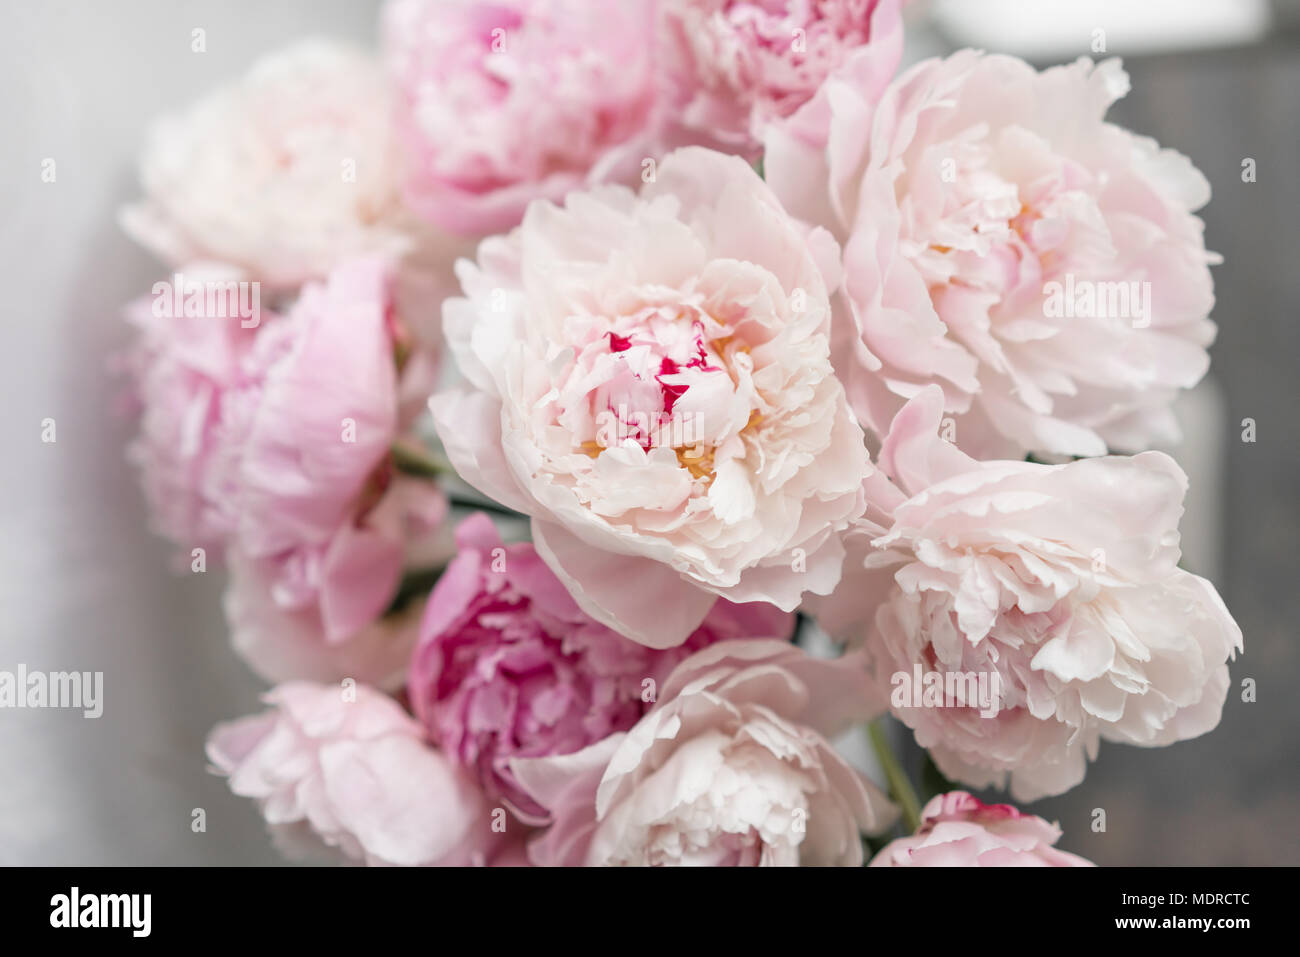 Mignon et jolie pivoine. nombreux pétales en couches. Bouquet de fleurs de pivoines  rose pâle fond gris clair. Fond d'écran, photo verticale Photo Stock - Alamy